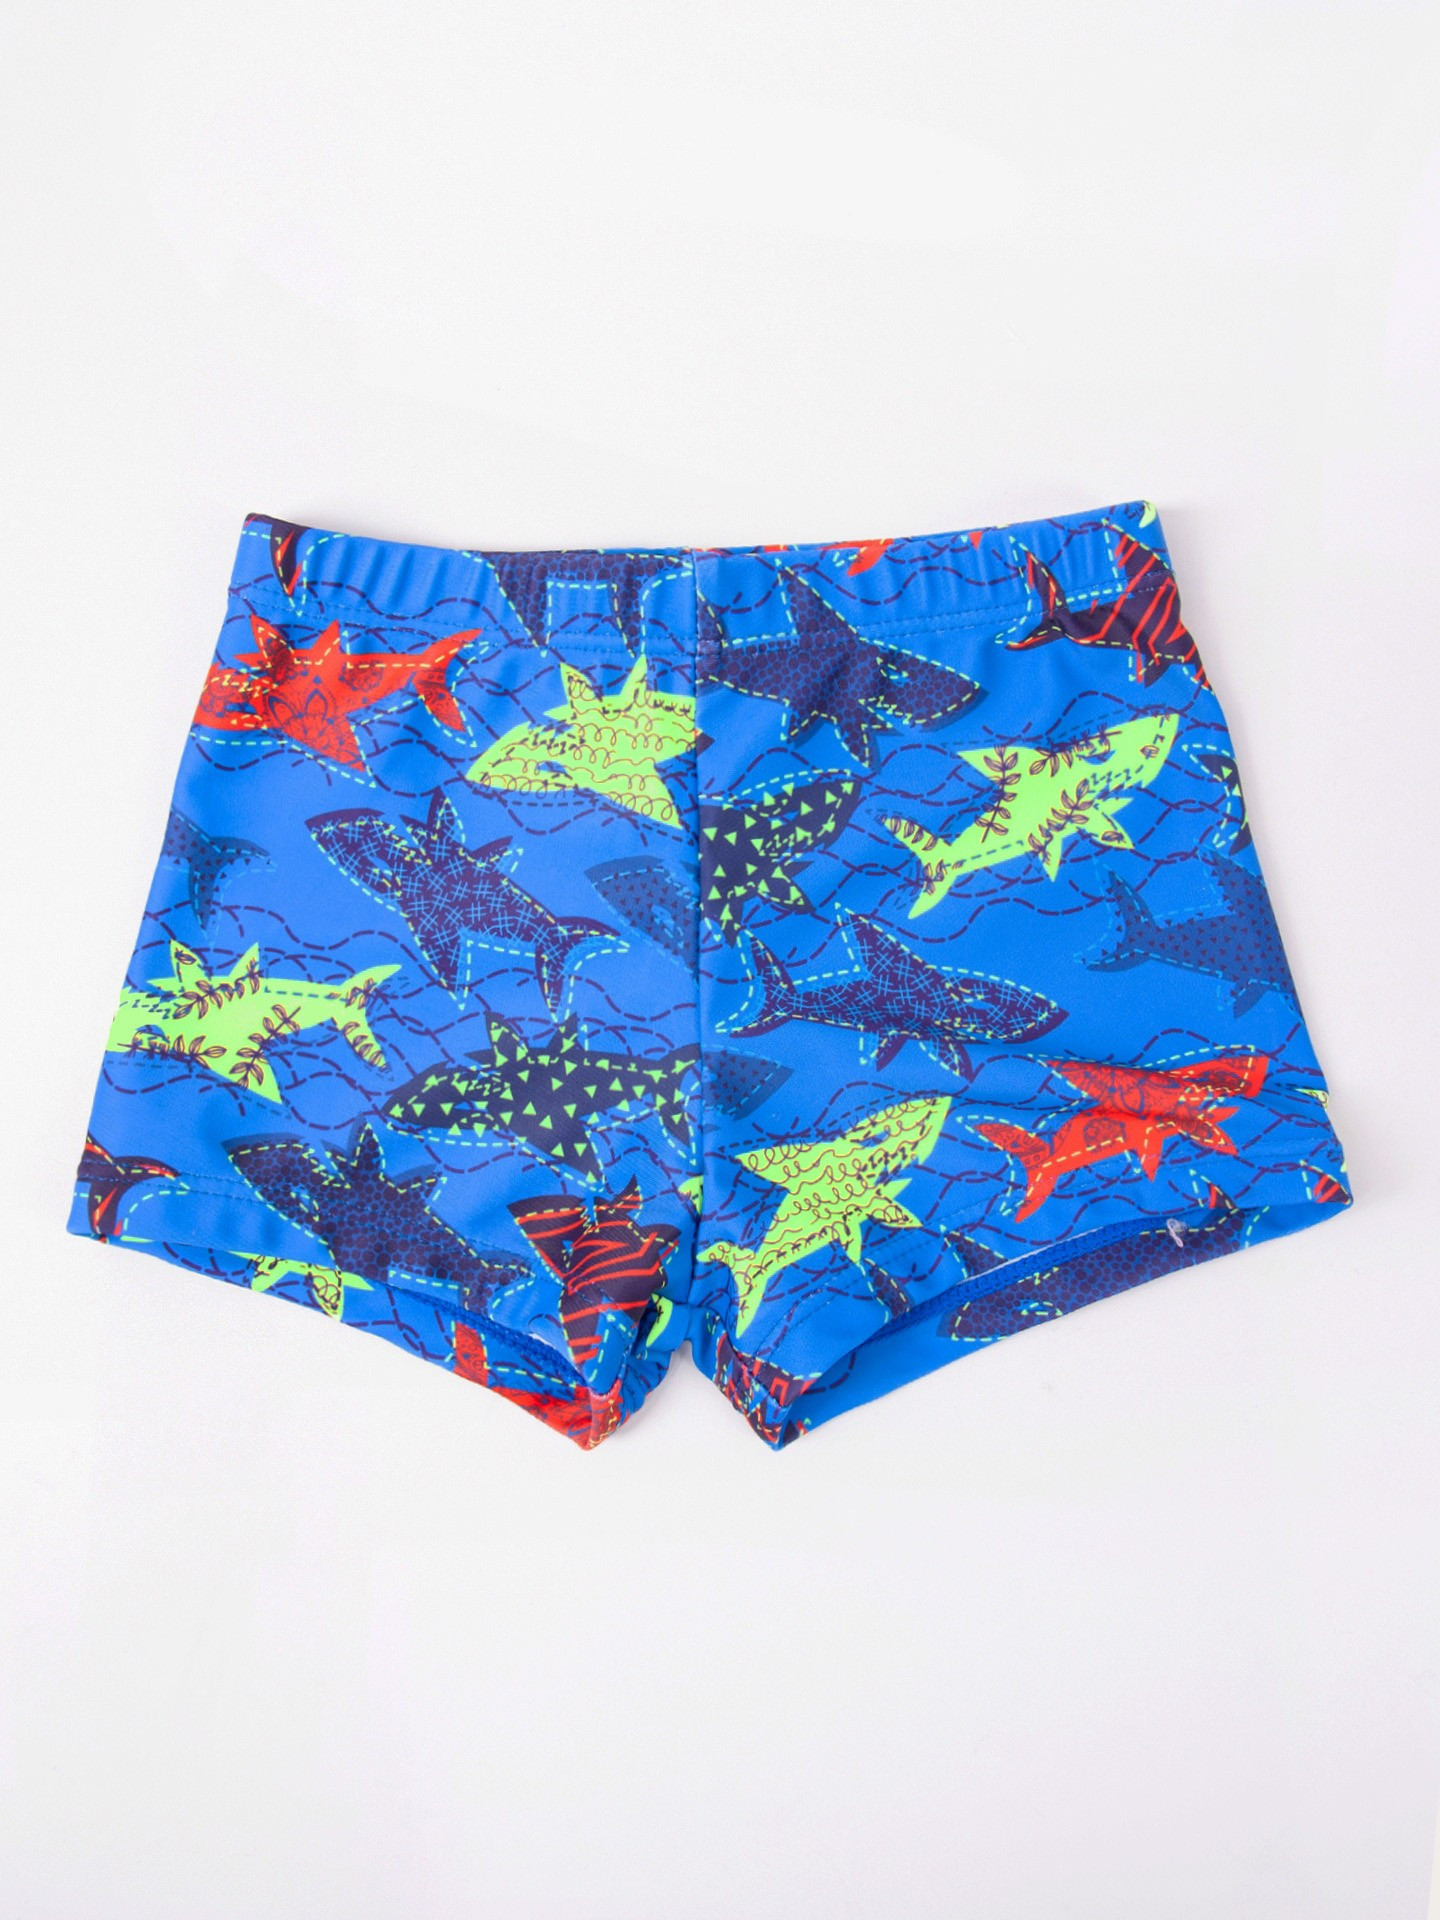 Chlapecké plavecké šortky Yoclub LKS-0055C-A100 Modré 92-98